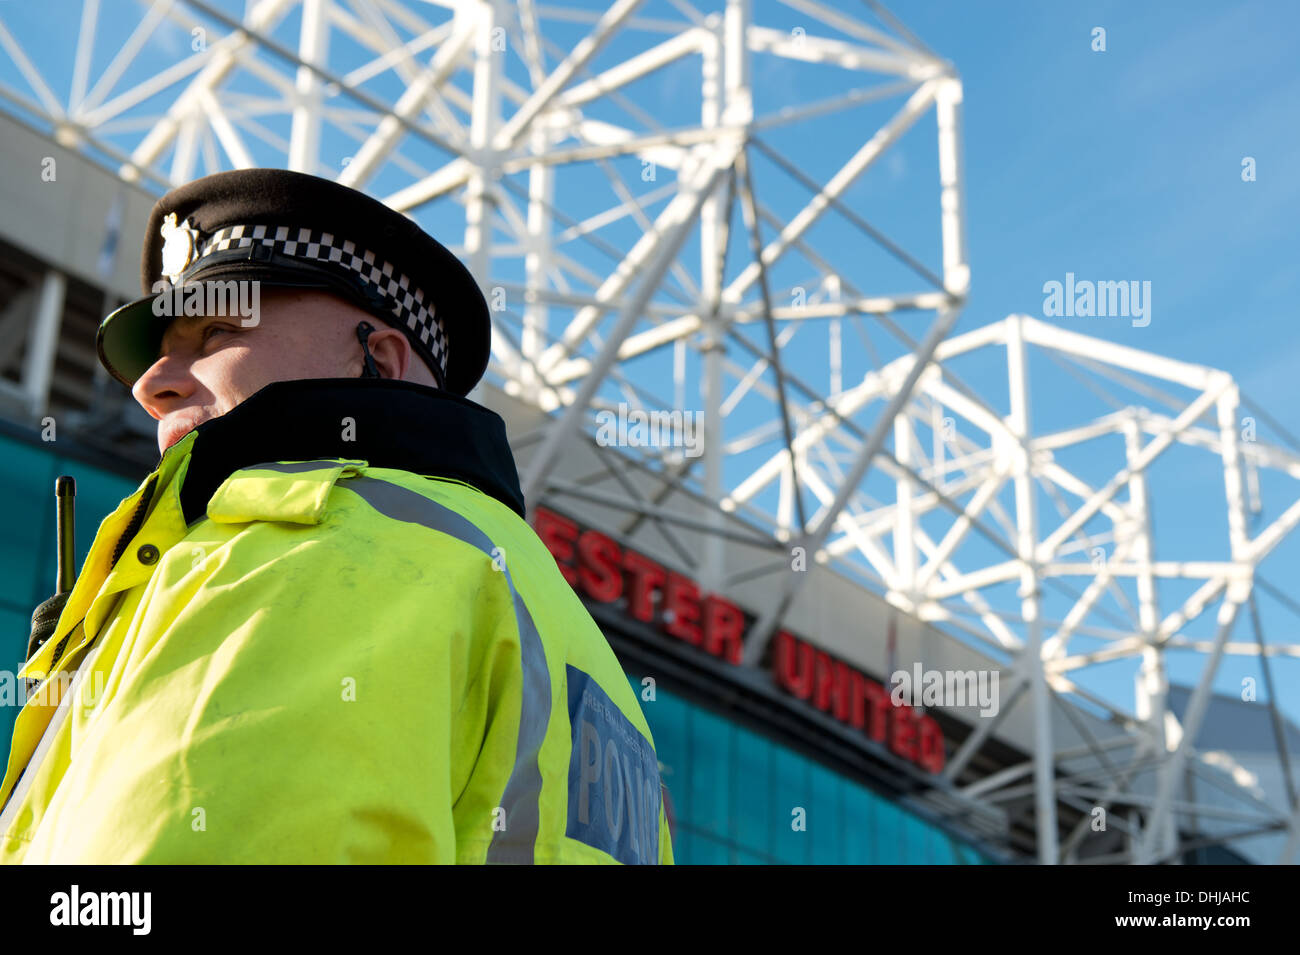 Ein Spiel Tag Polizist stehen im Dienst außerhalb Old Trafford Stadion, Heimstadion von Manchester United (nur zur redaktionellen Verwendung). Stockfoto